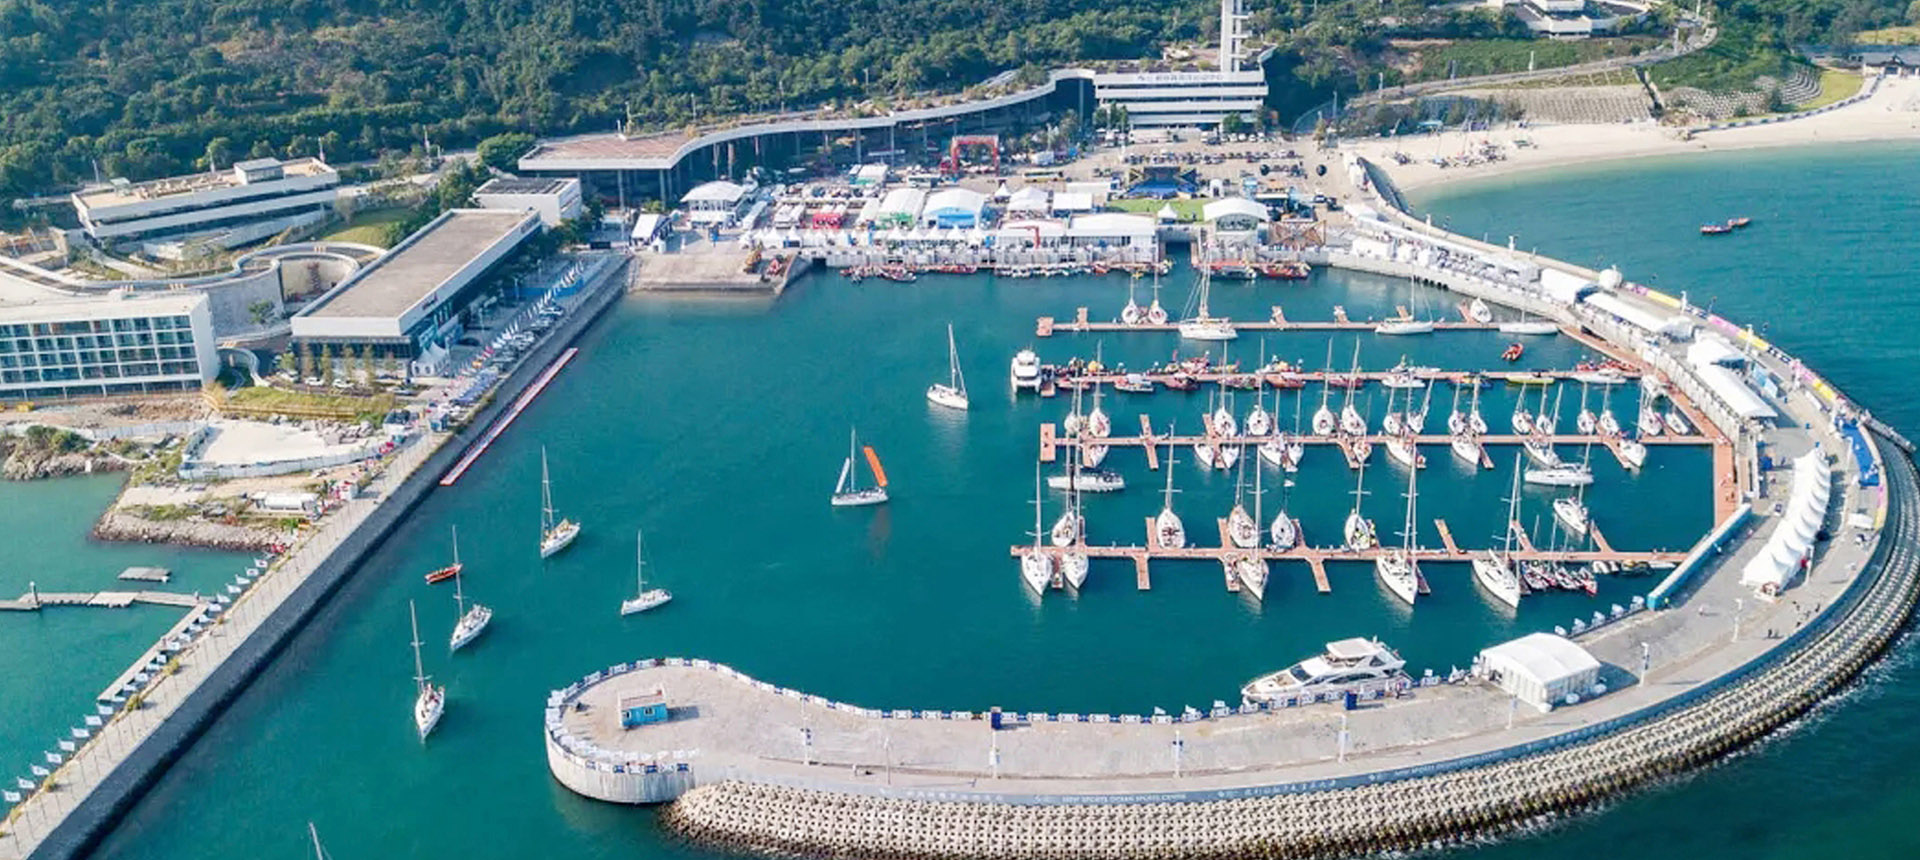 游艇码头在旅游业发展中的作用